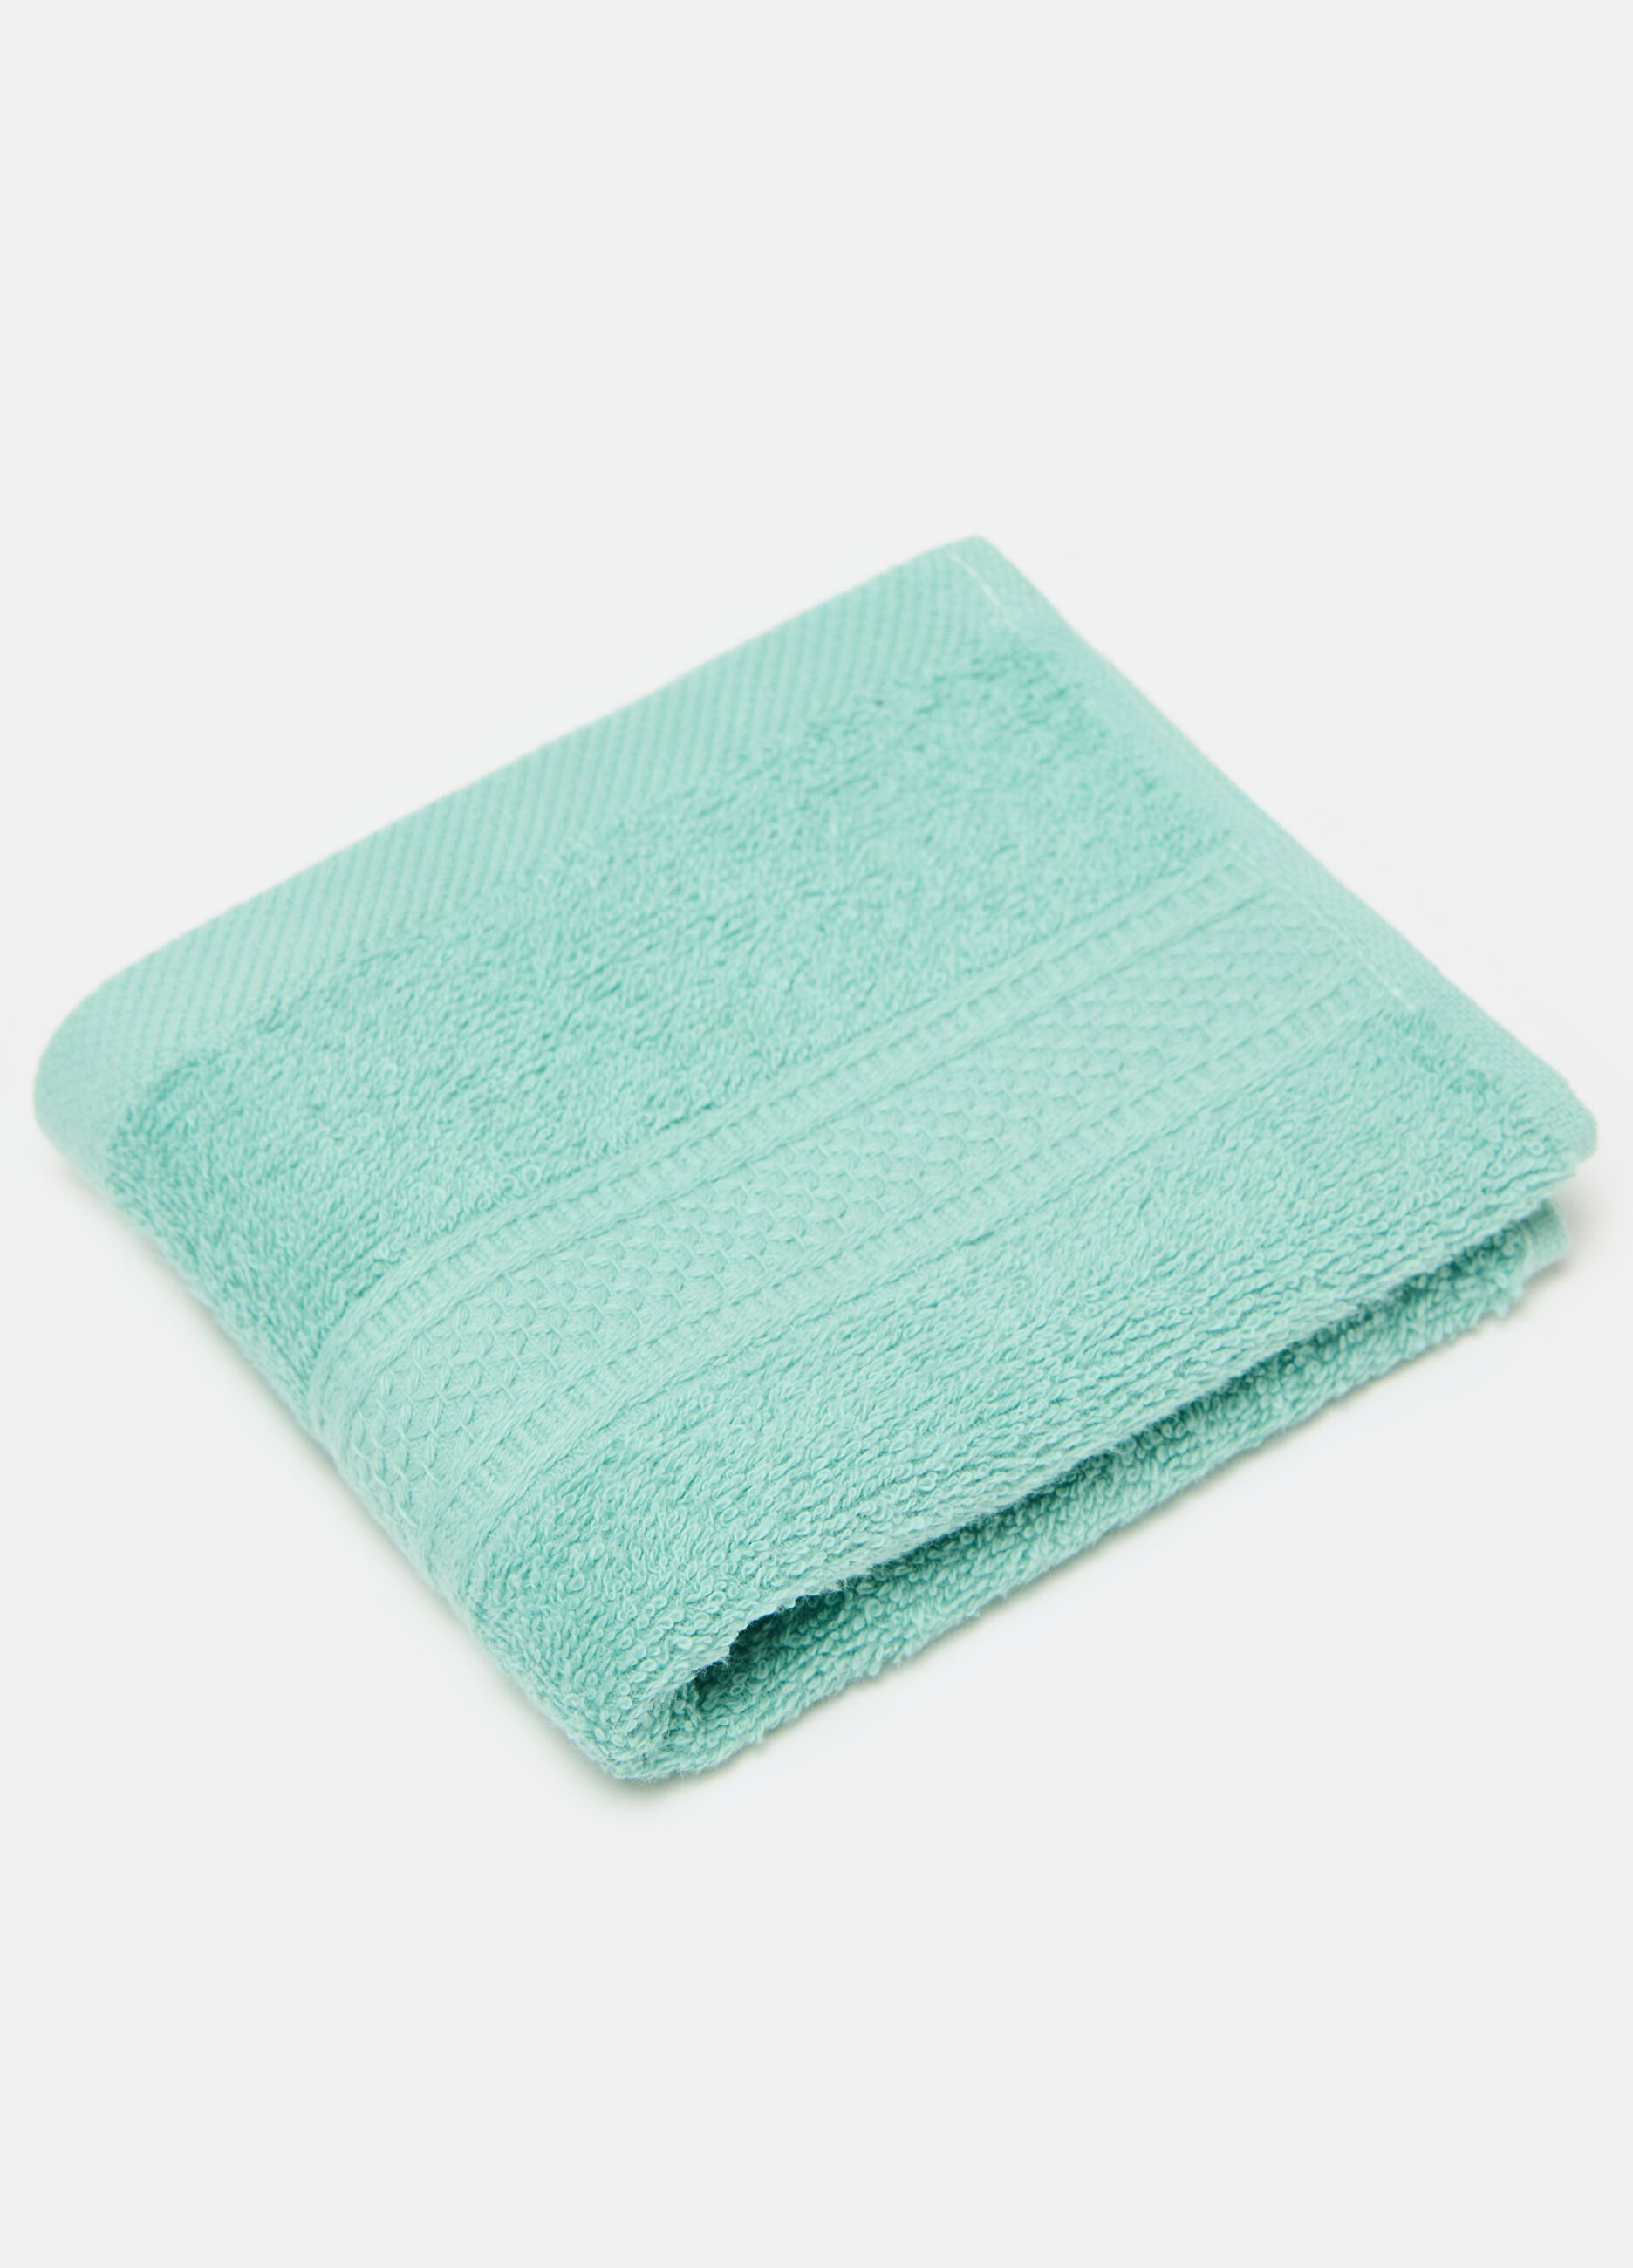 Solid colour guest towel